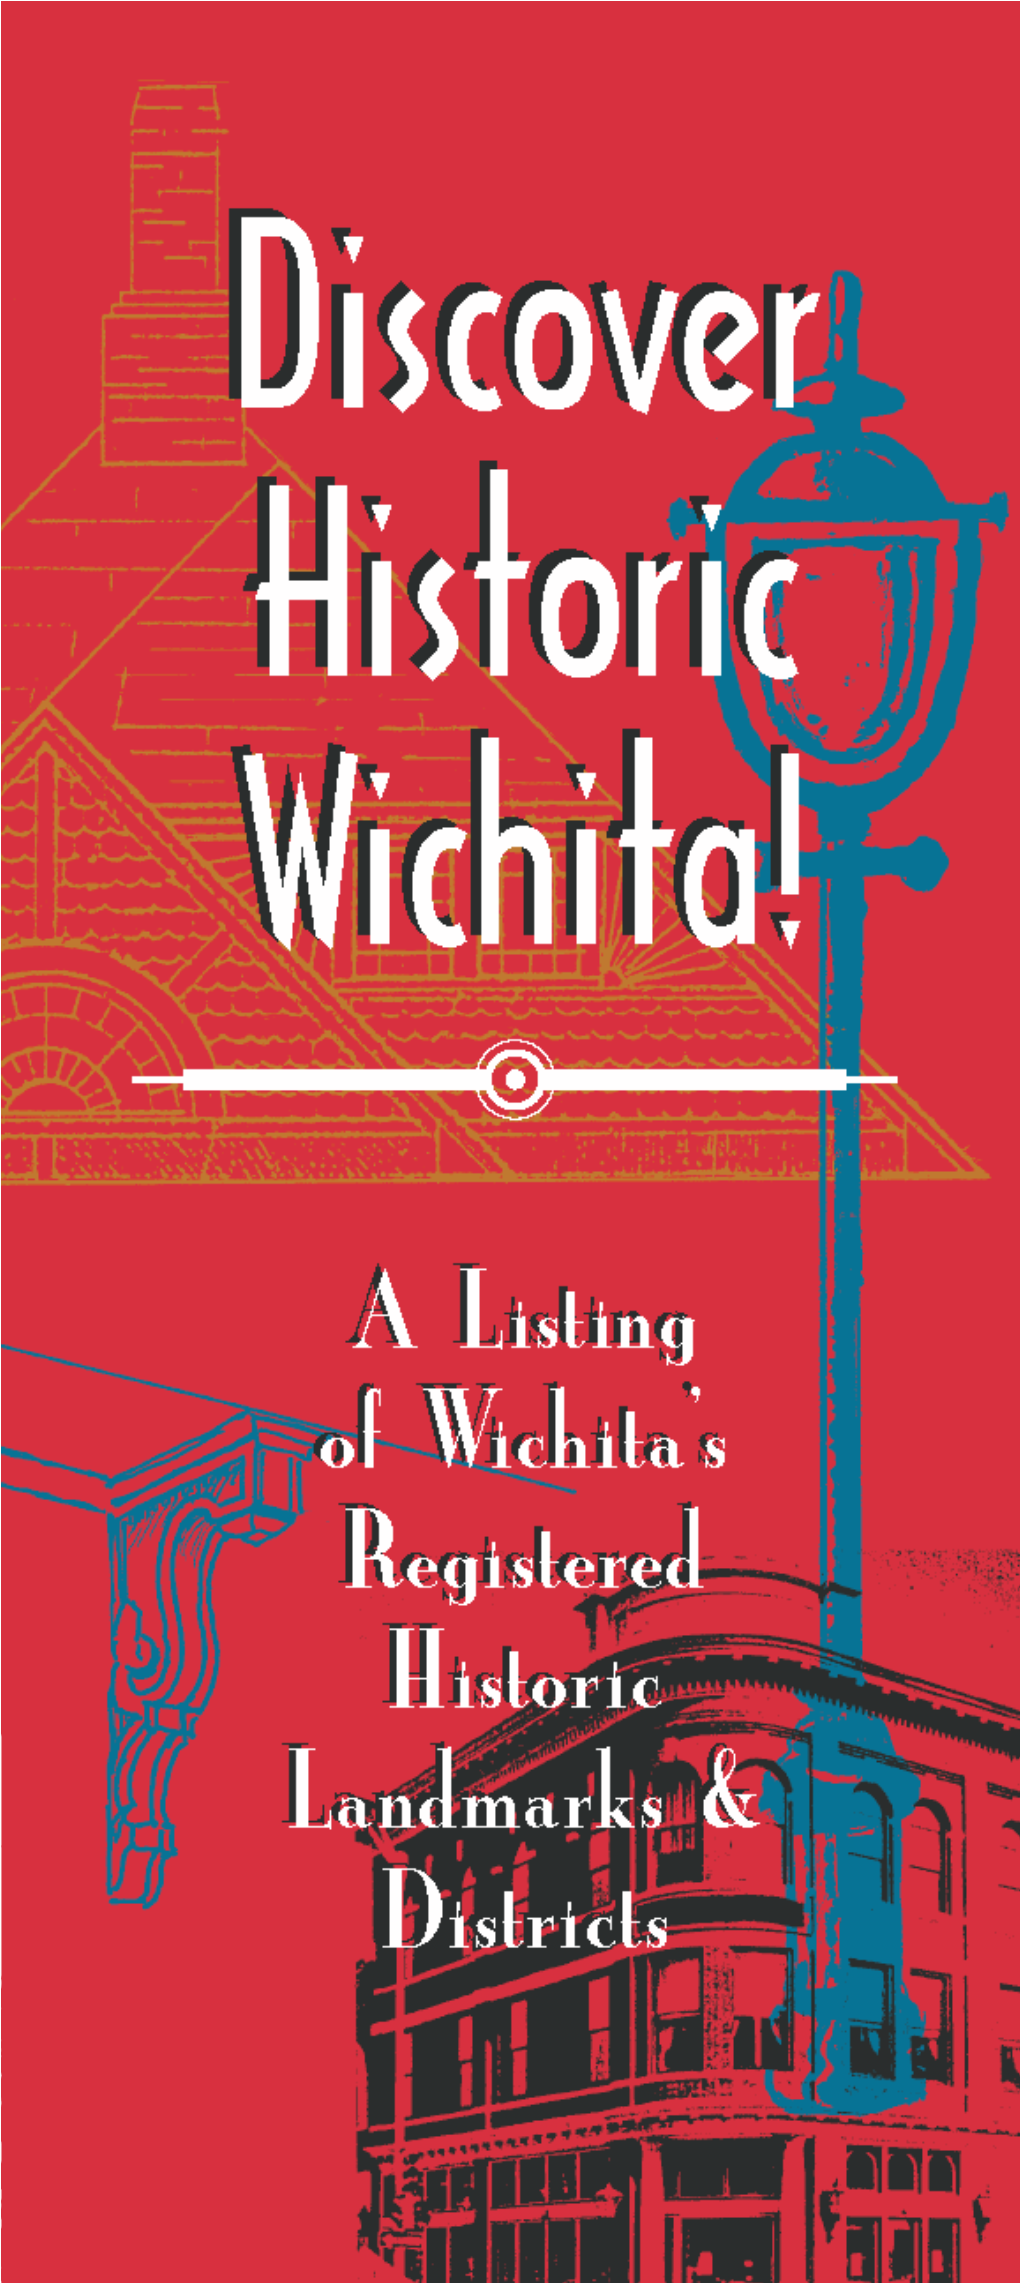 Discover Historic Wichita! Booklet